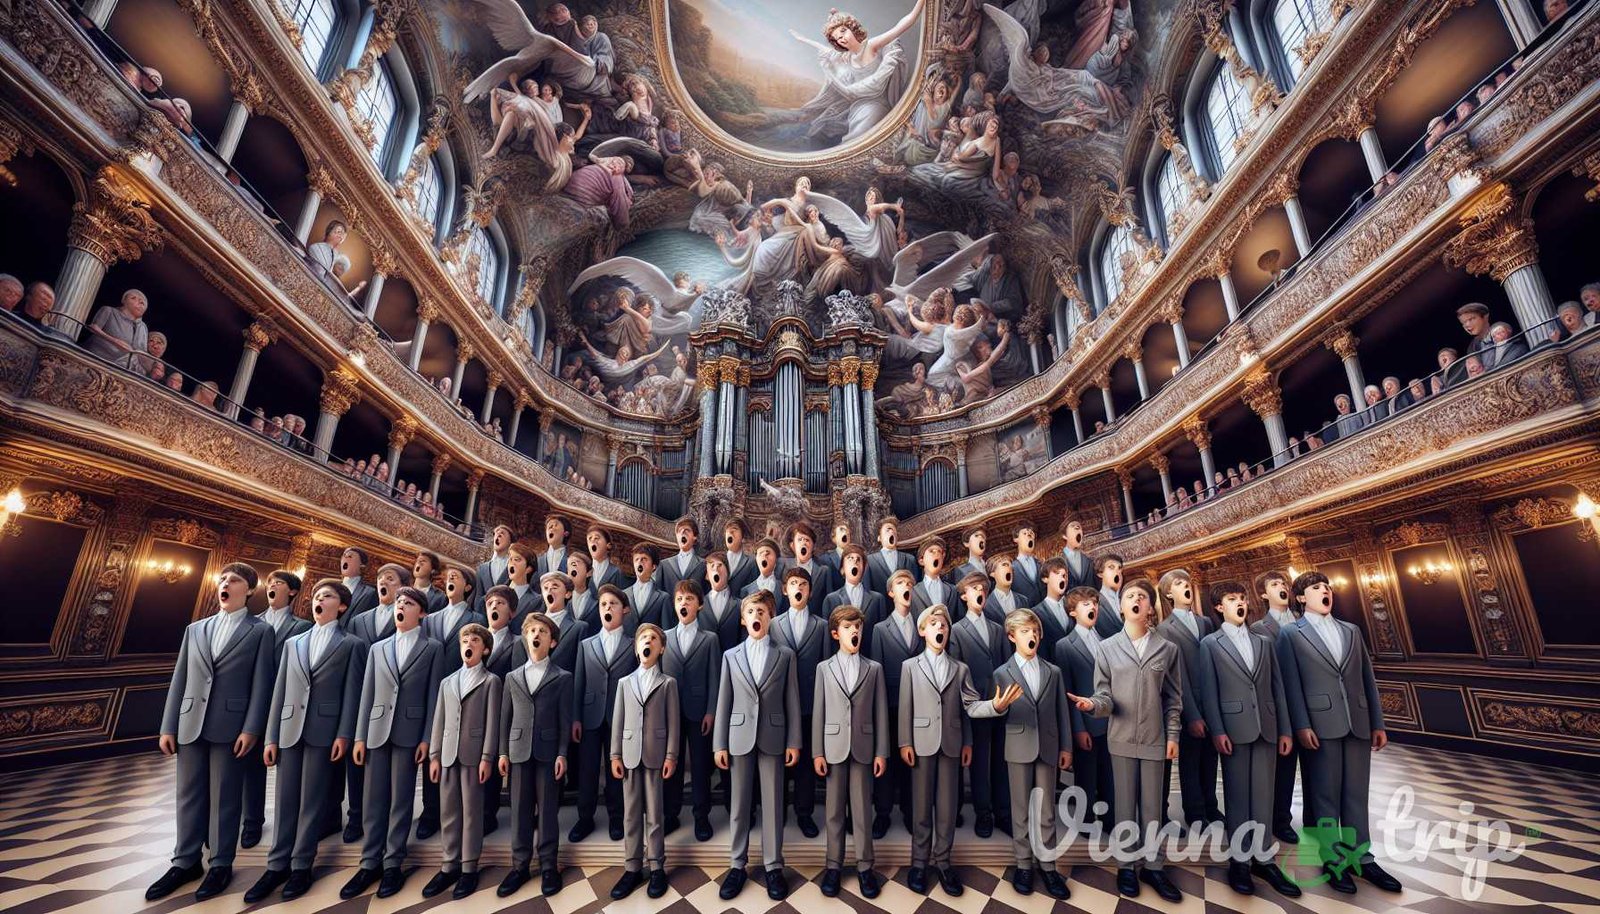 Ilustración para la sección: Coro de Niños de Viena: Con más de 500 años de historia, el Coro de Niños de Viena es una auténtica institución vienesa - vienna harmonies